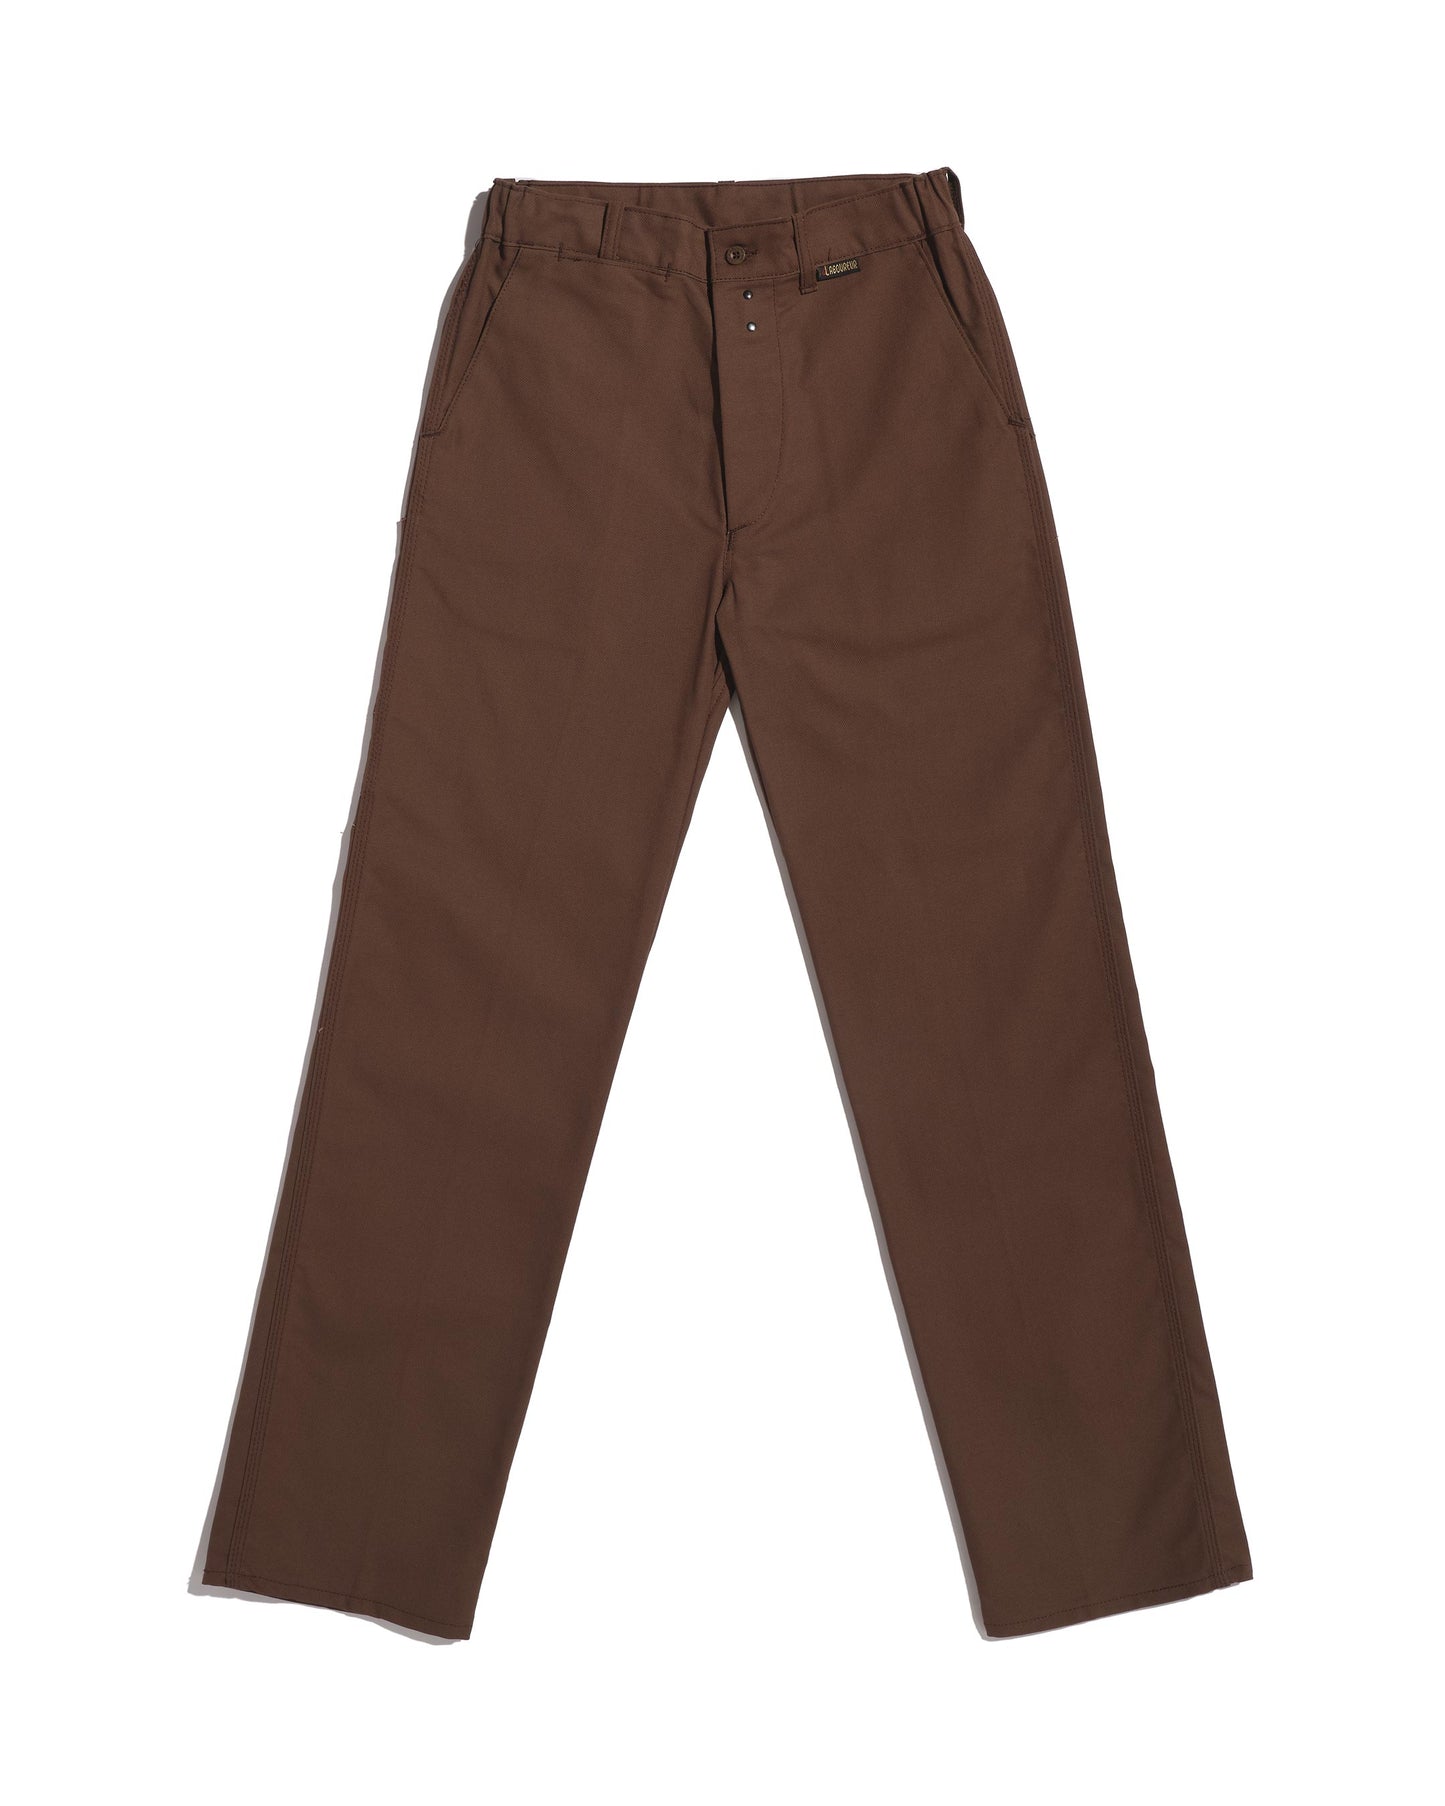 Straight brown work pants (End of series)